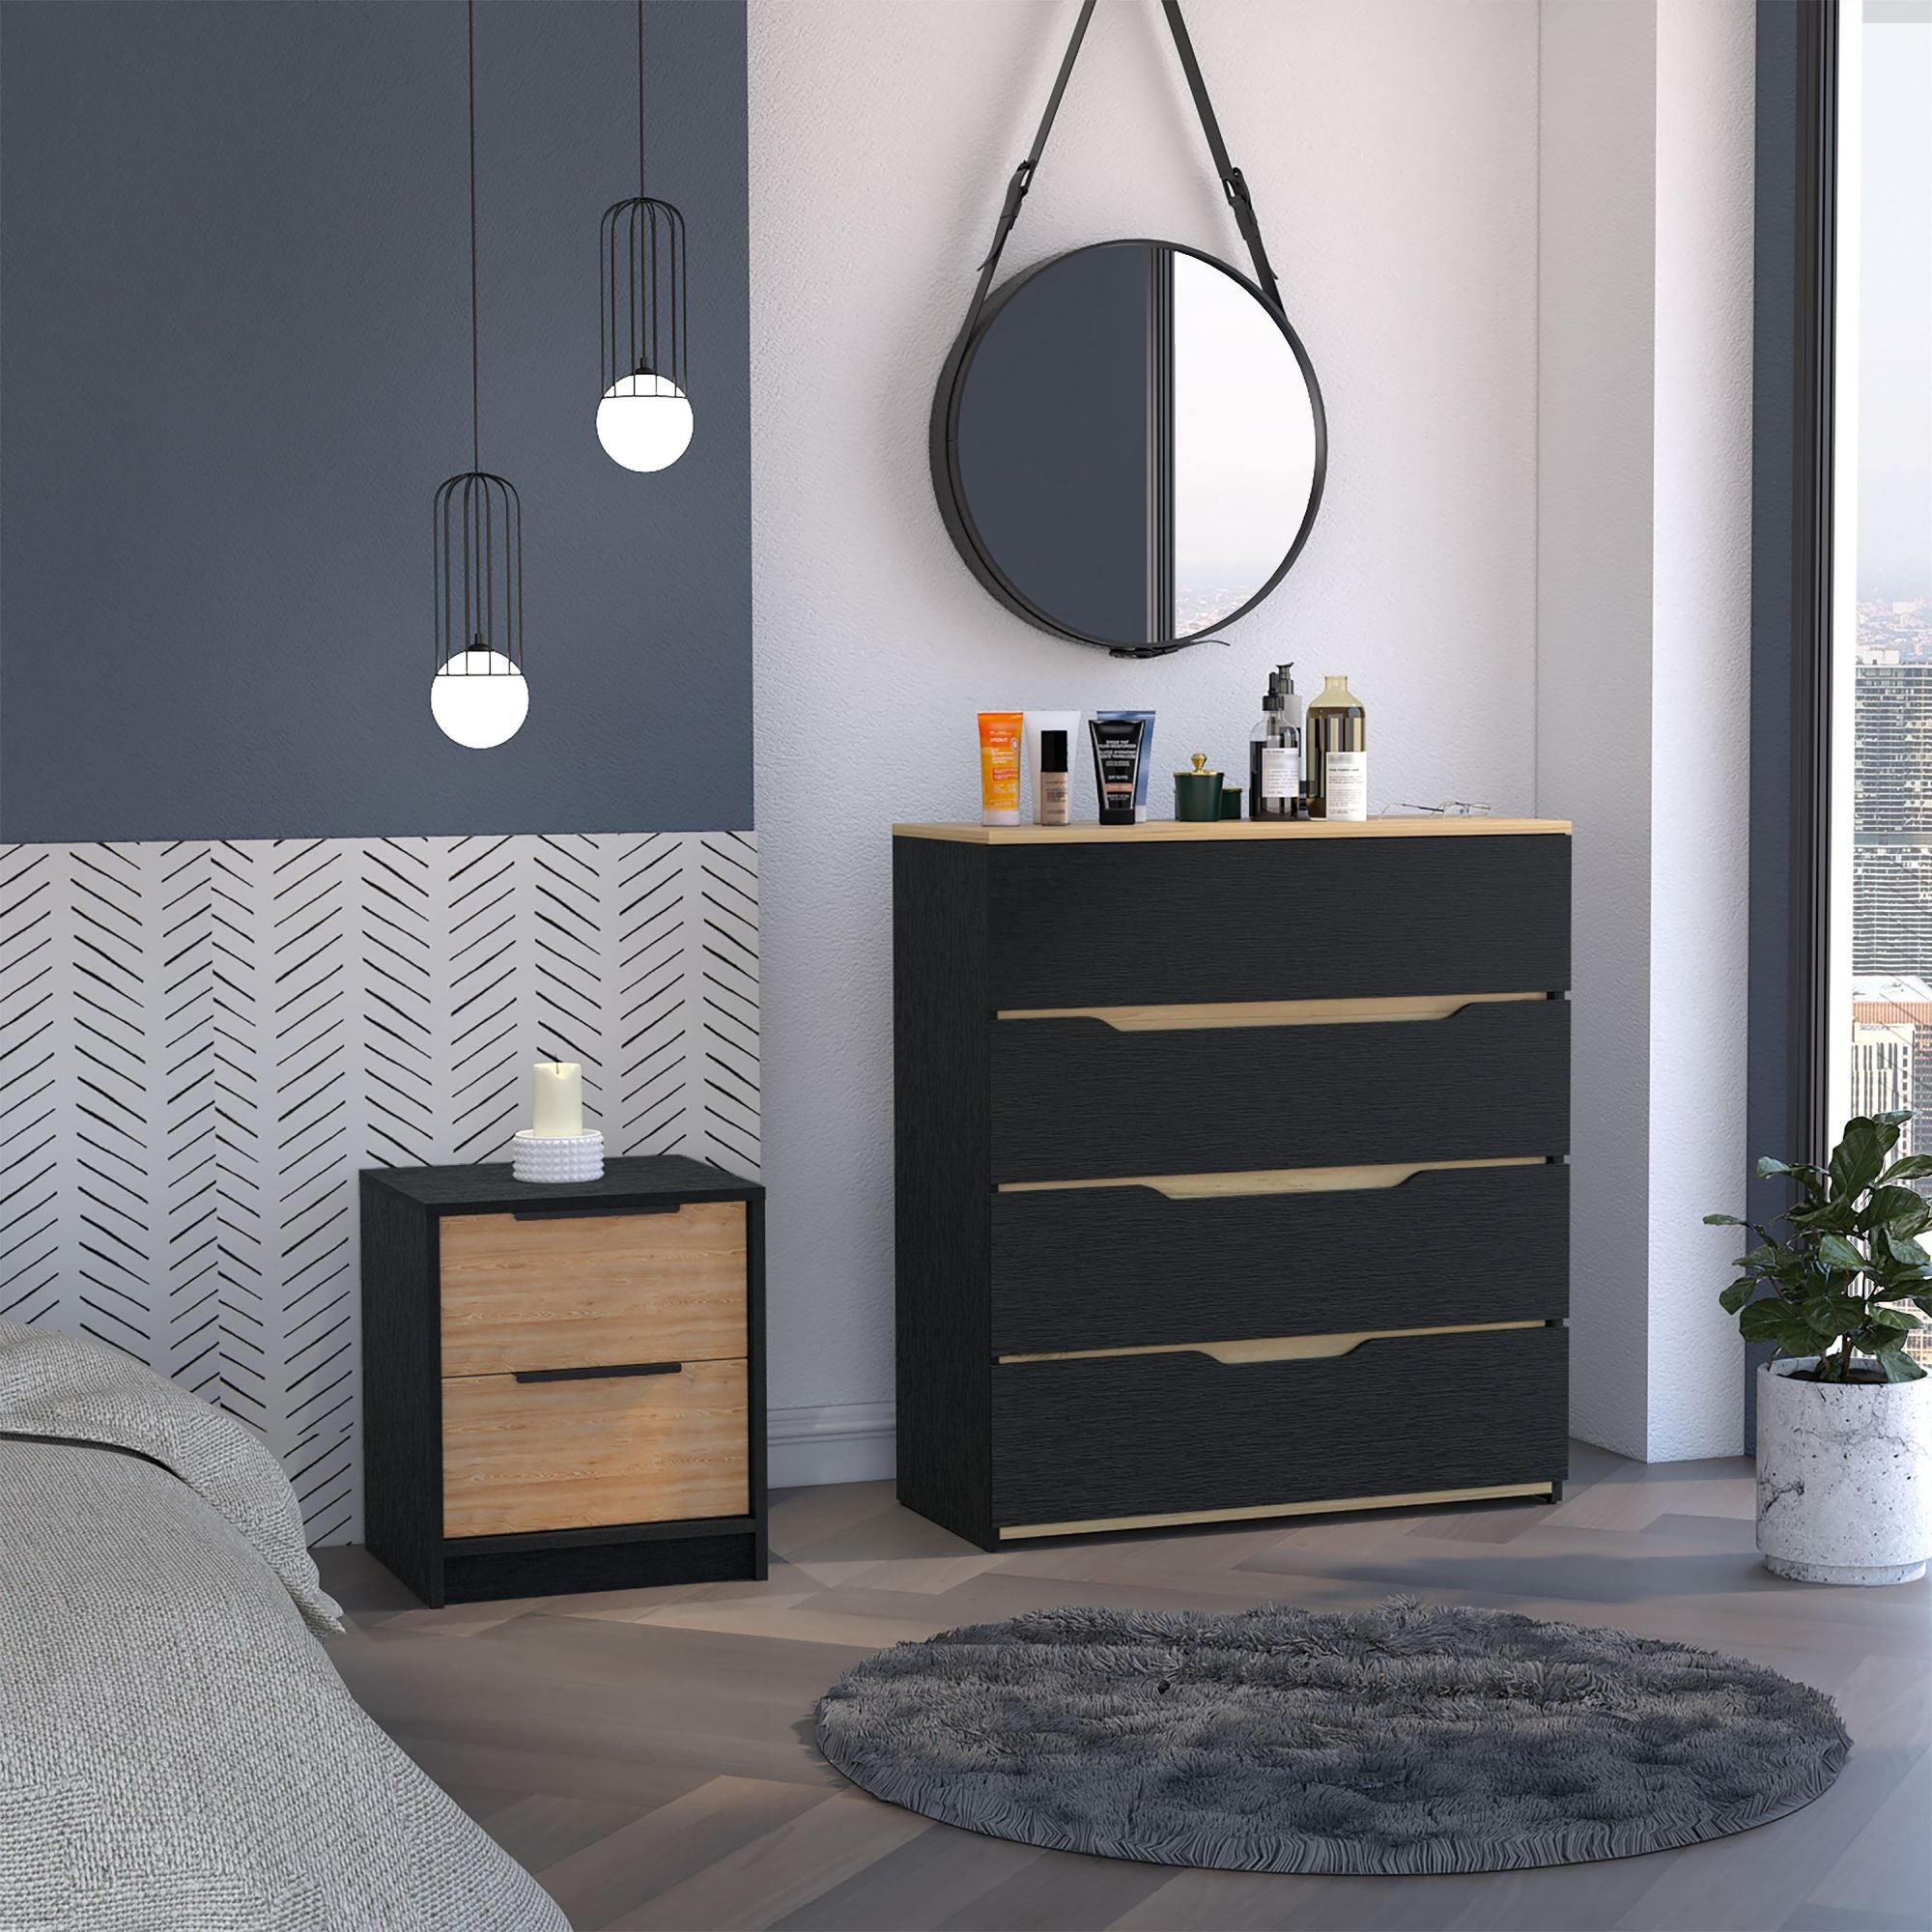 Canby 2 Piece Bedroom Set, Nightstand + Drawer Dresser, Black / Pine / Light Oak